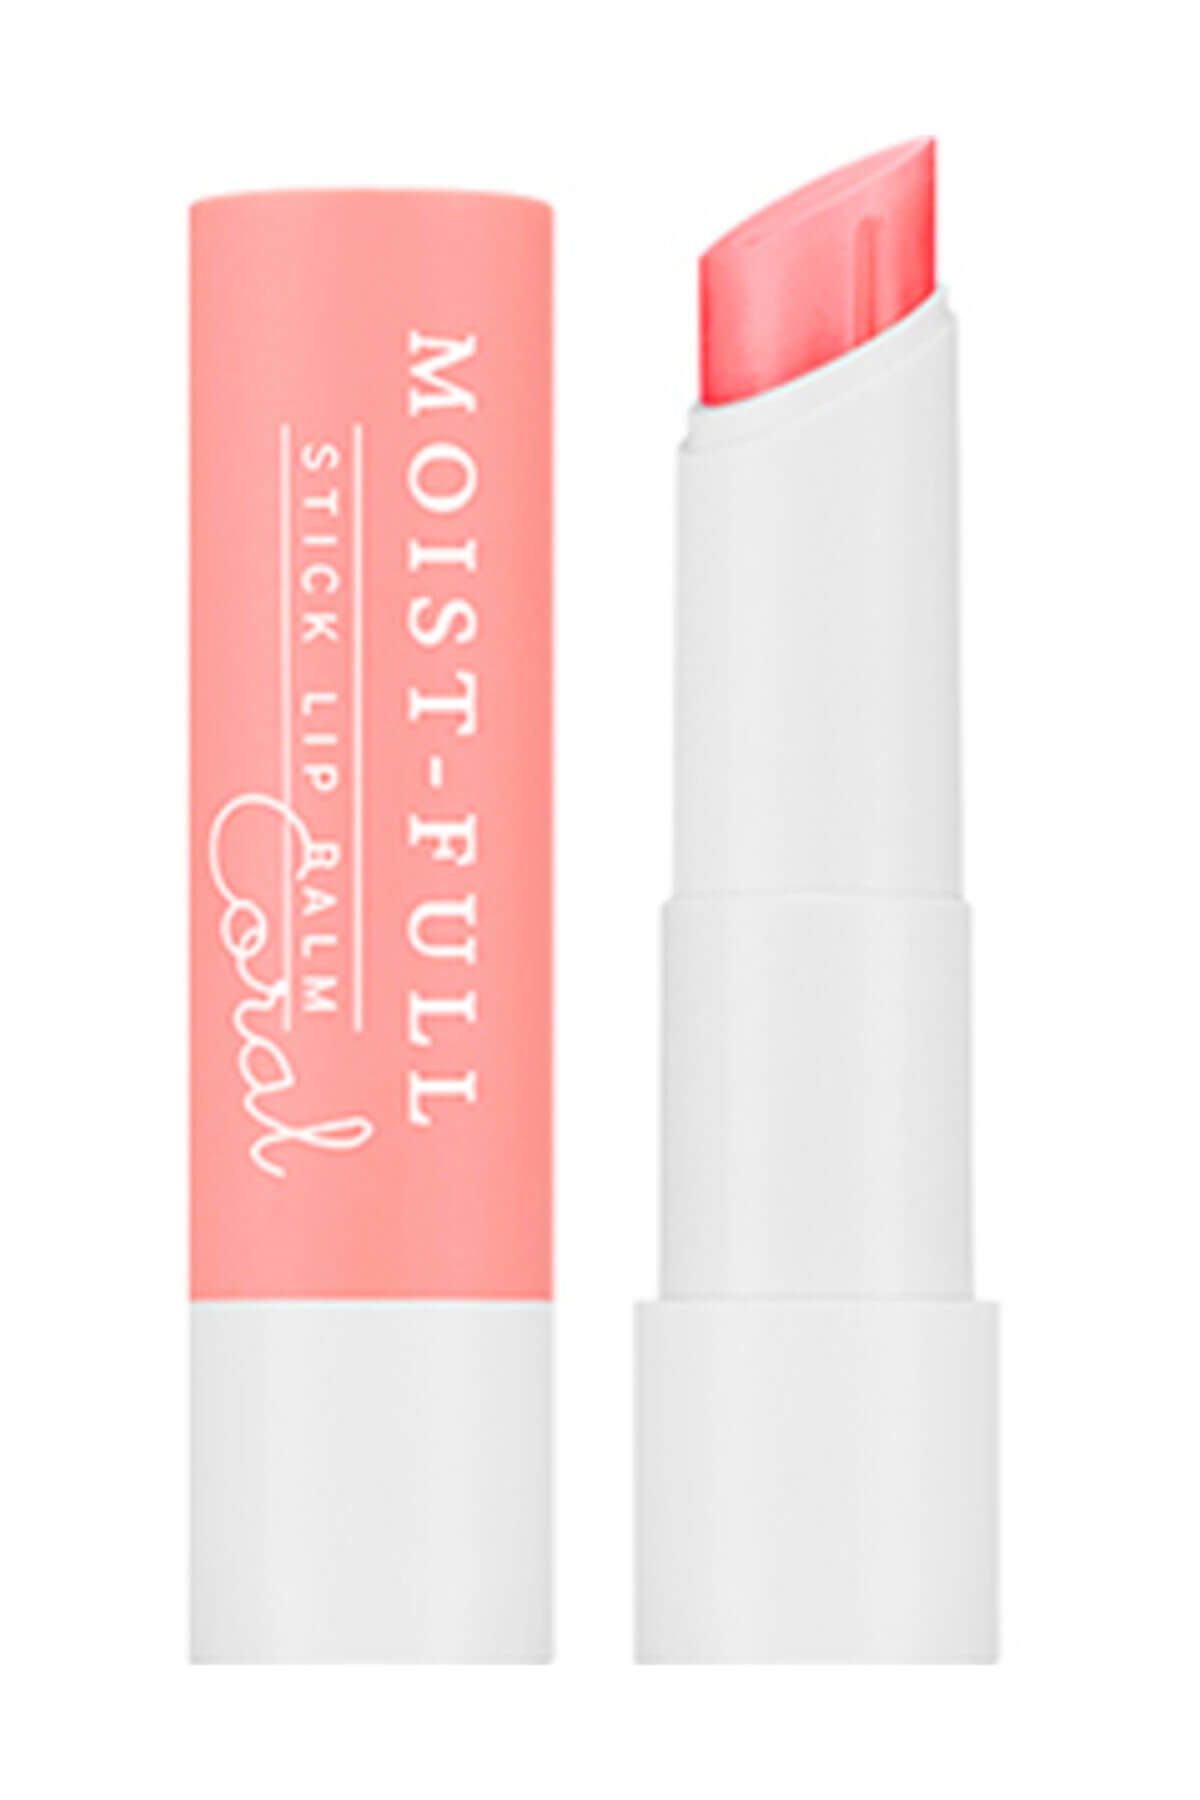 Missha Nemlendirici dudak stiği - Moist-Full Stick Lip Balm (Coral) 3.3g 8806185789813